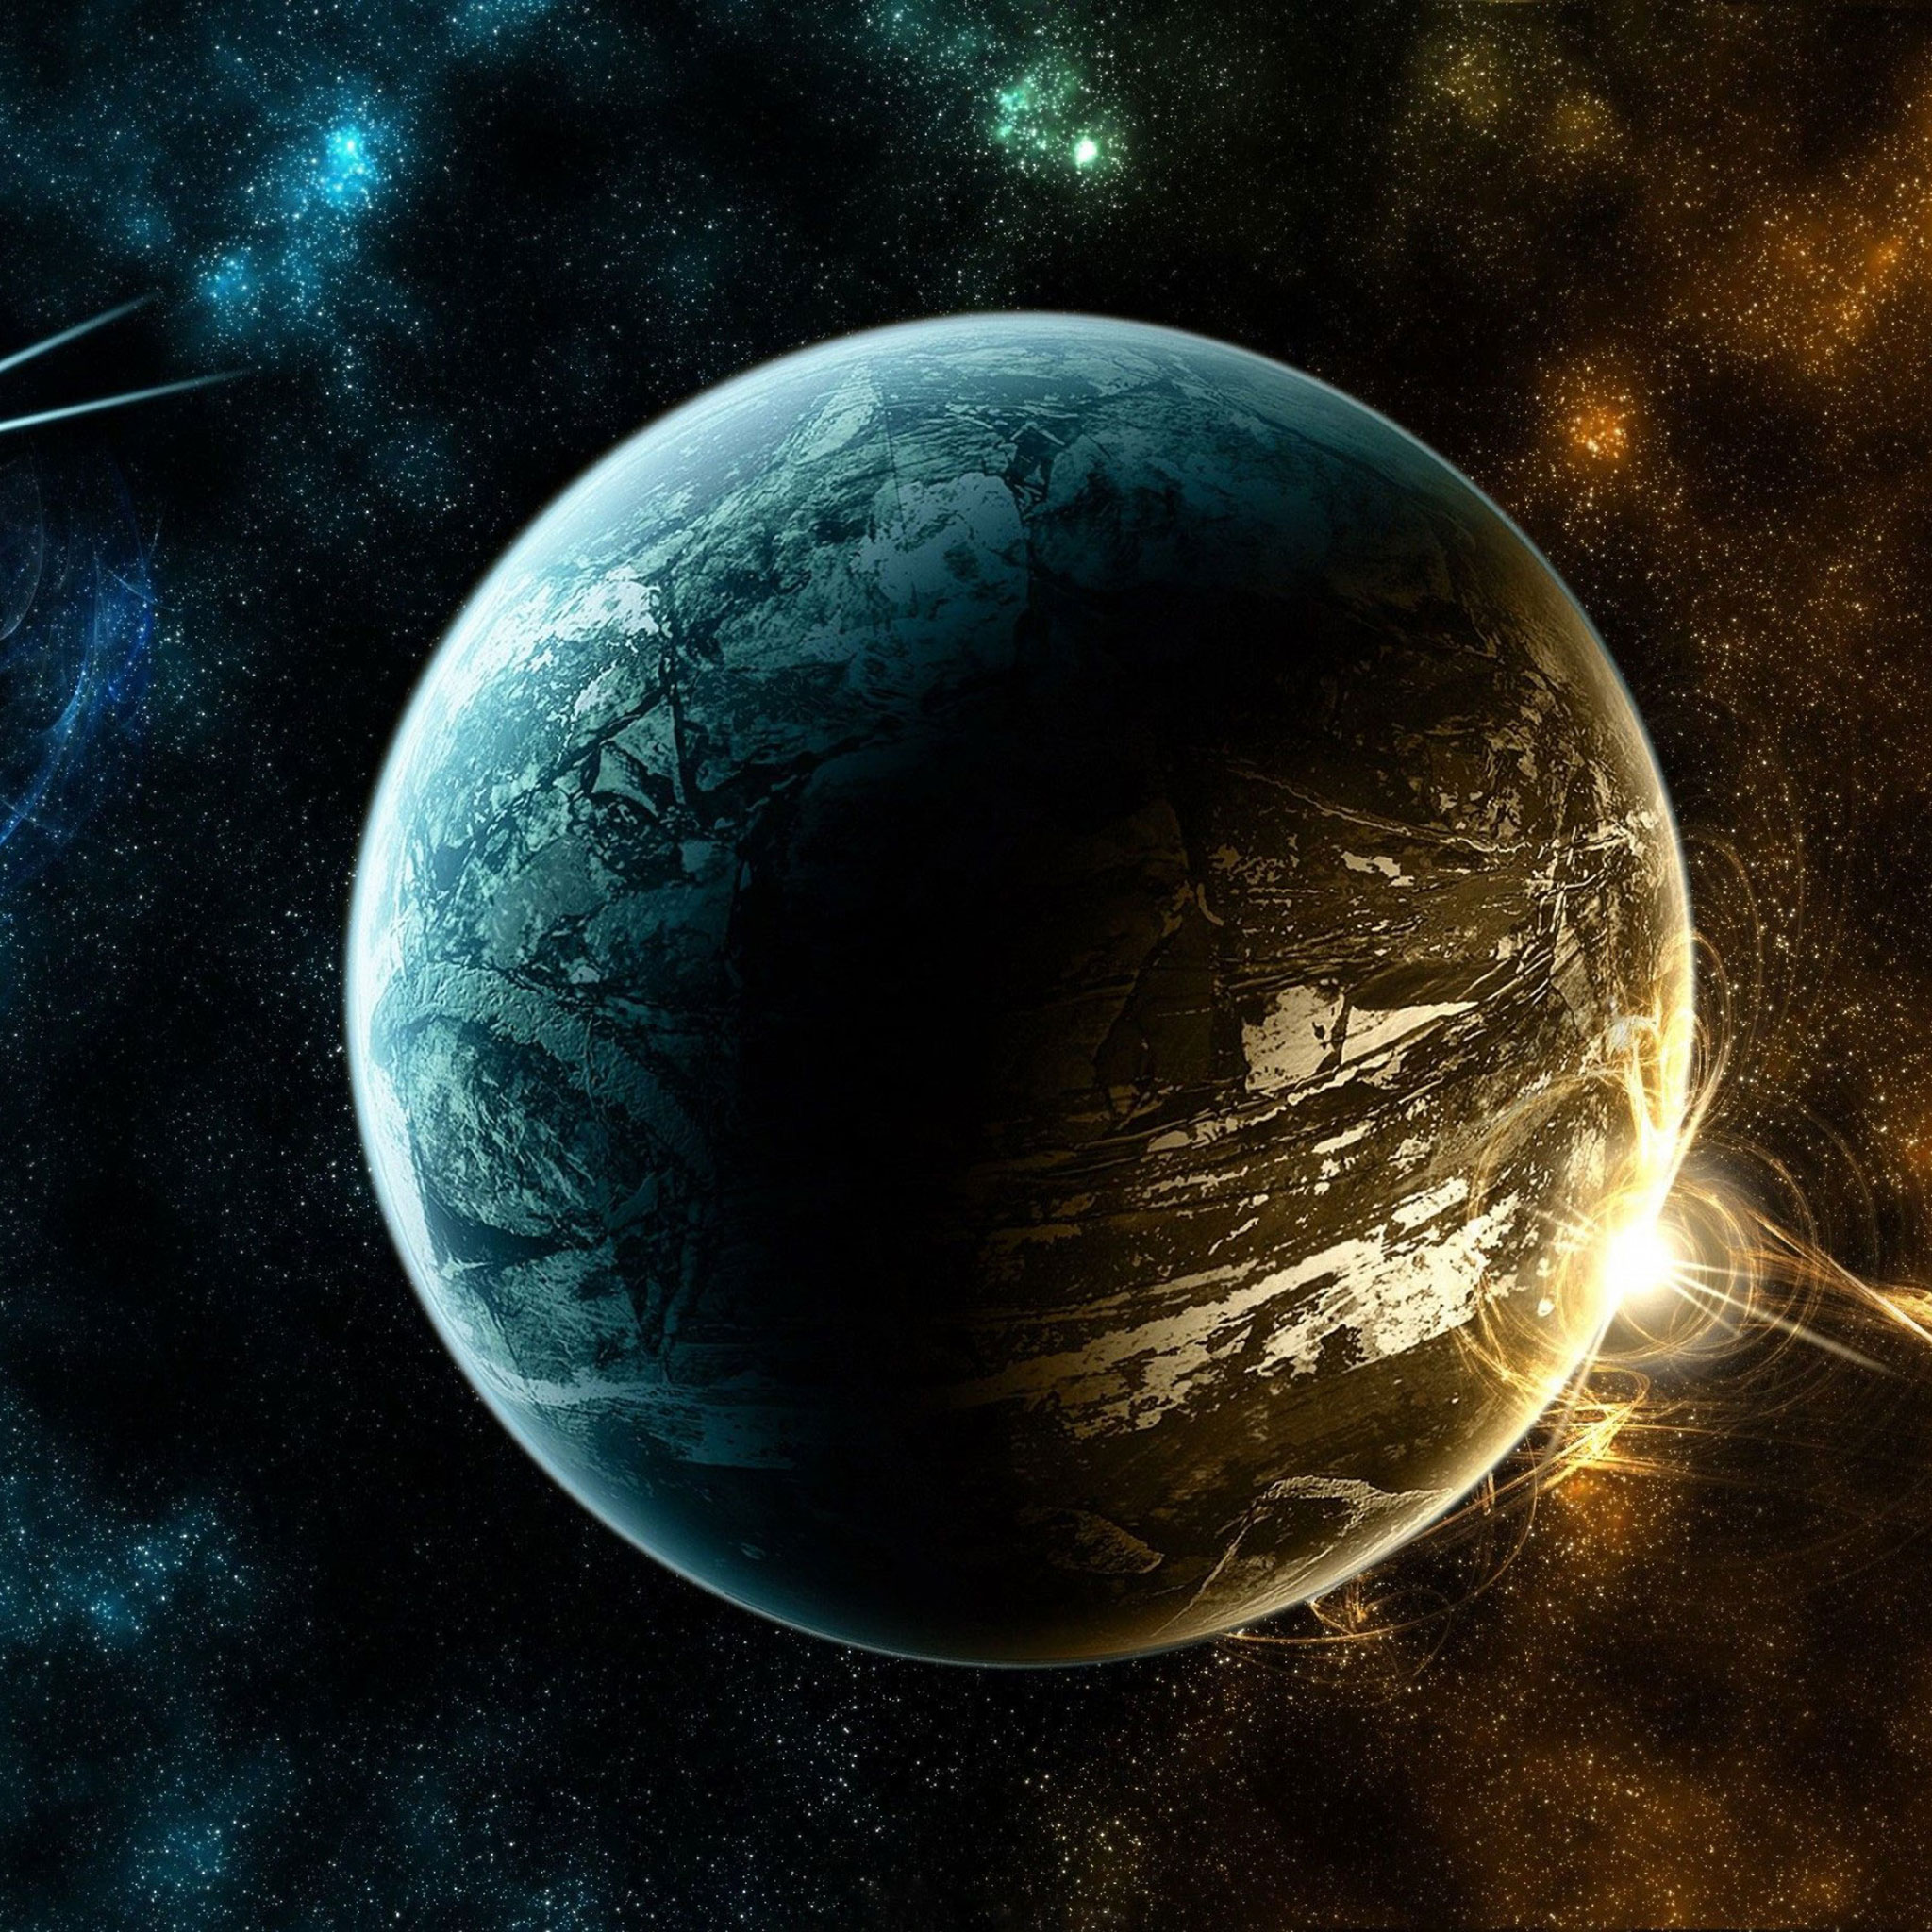 ipad space wallpaper,planeta,espacio exterior,tierra,objeto astronómico,atmósfera